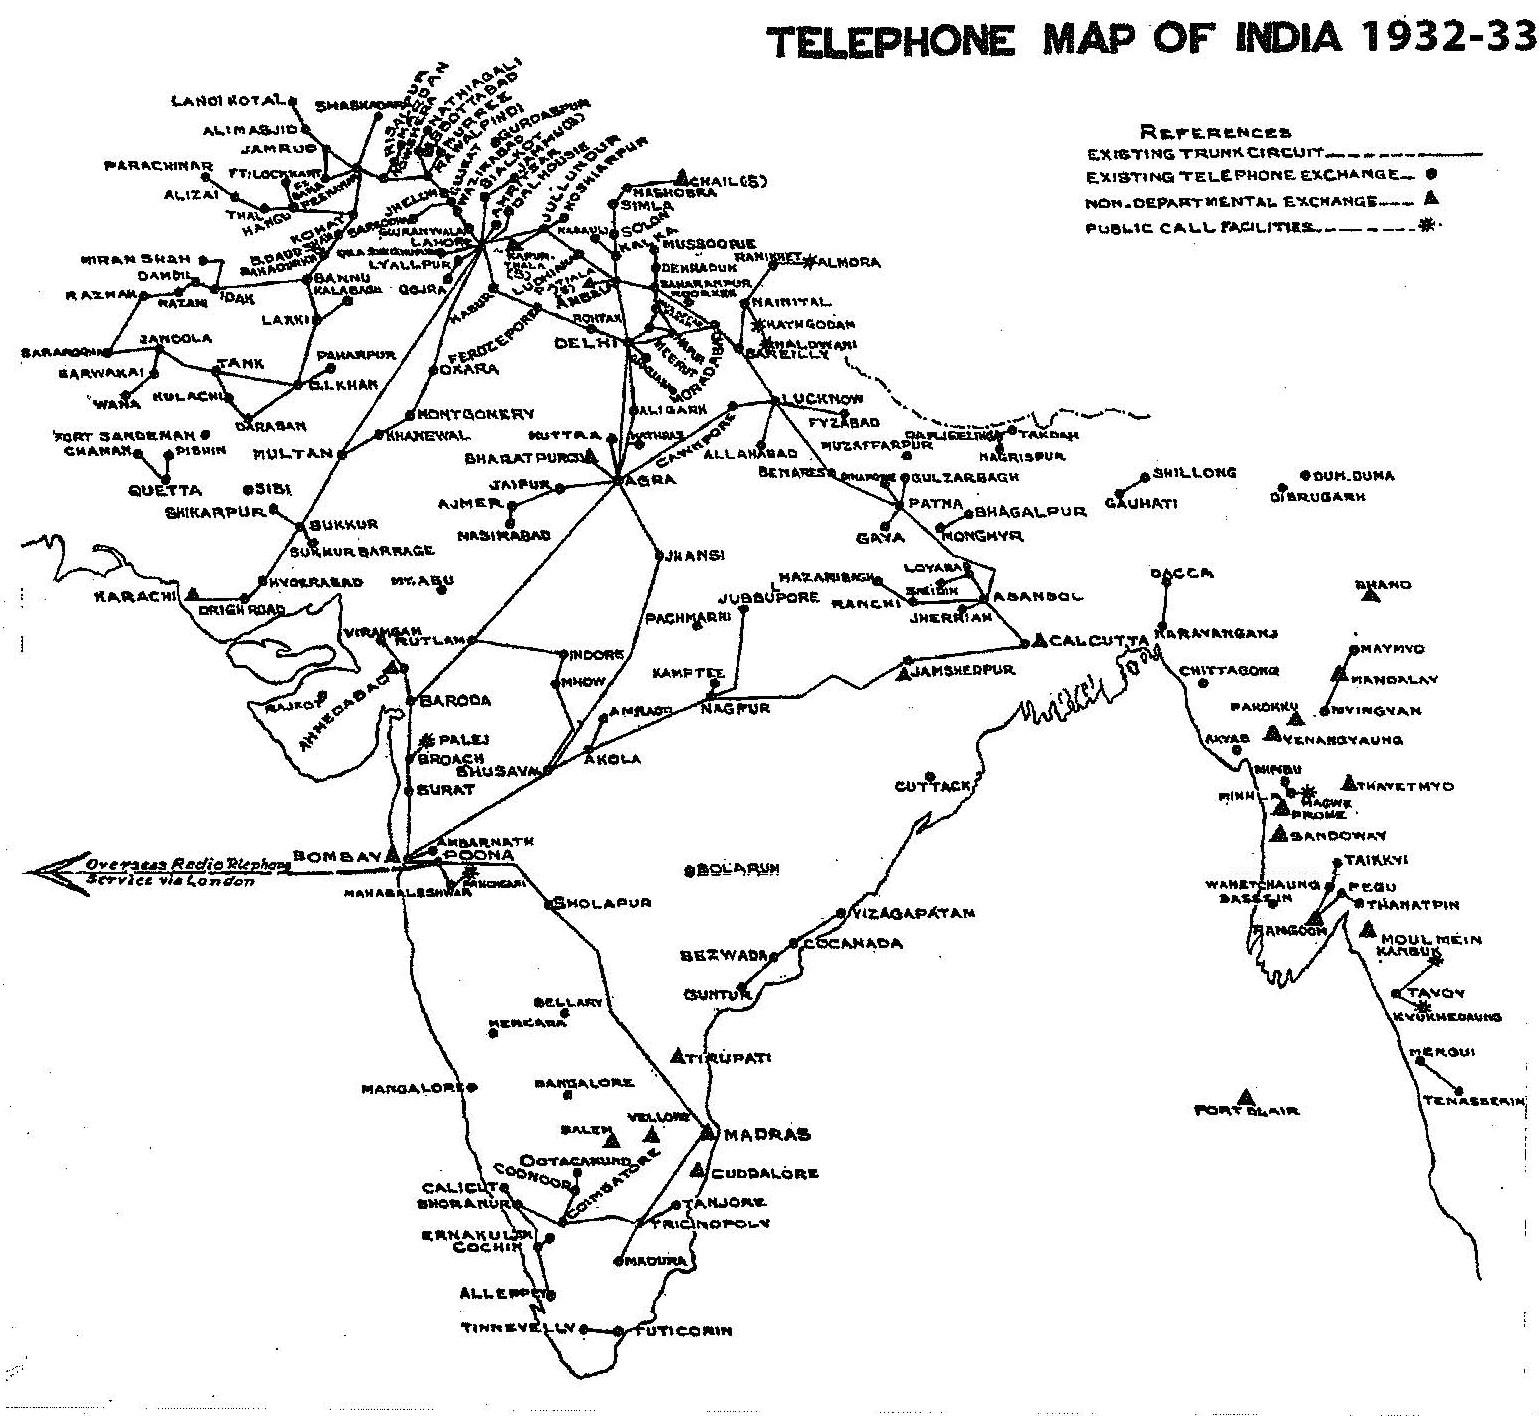 Telecommunication Project - Telephone Map 1933